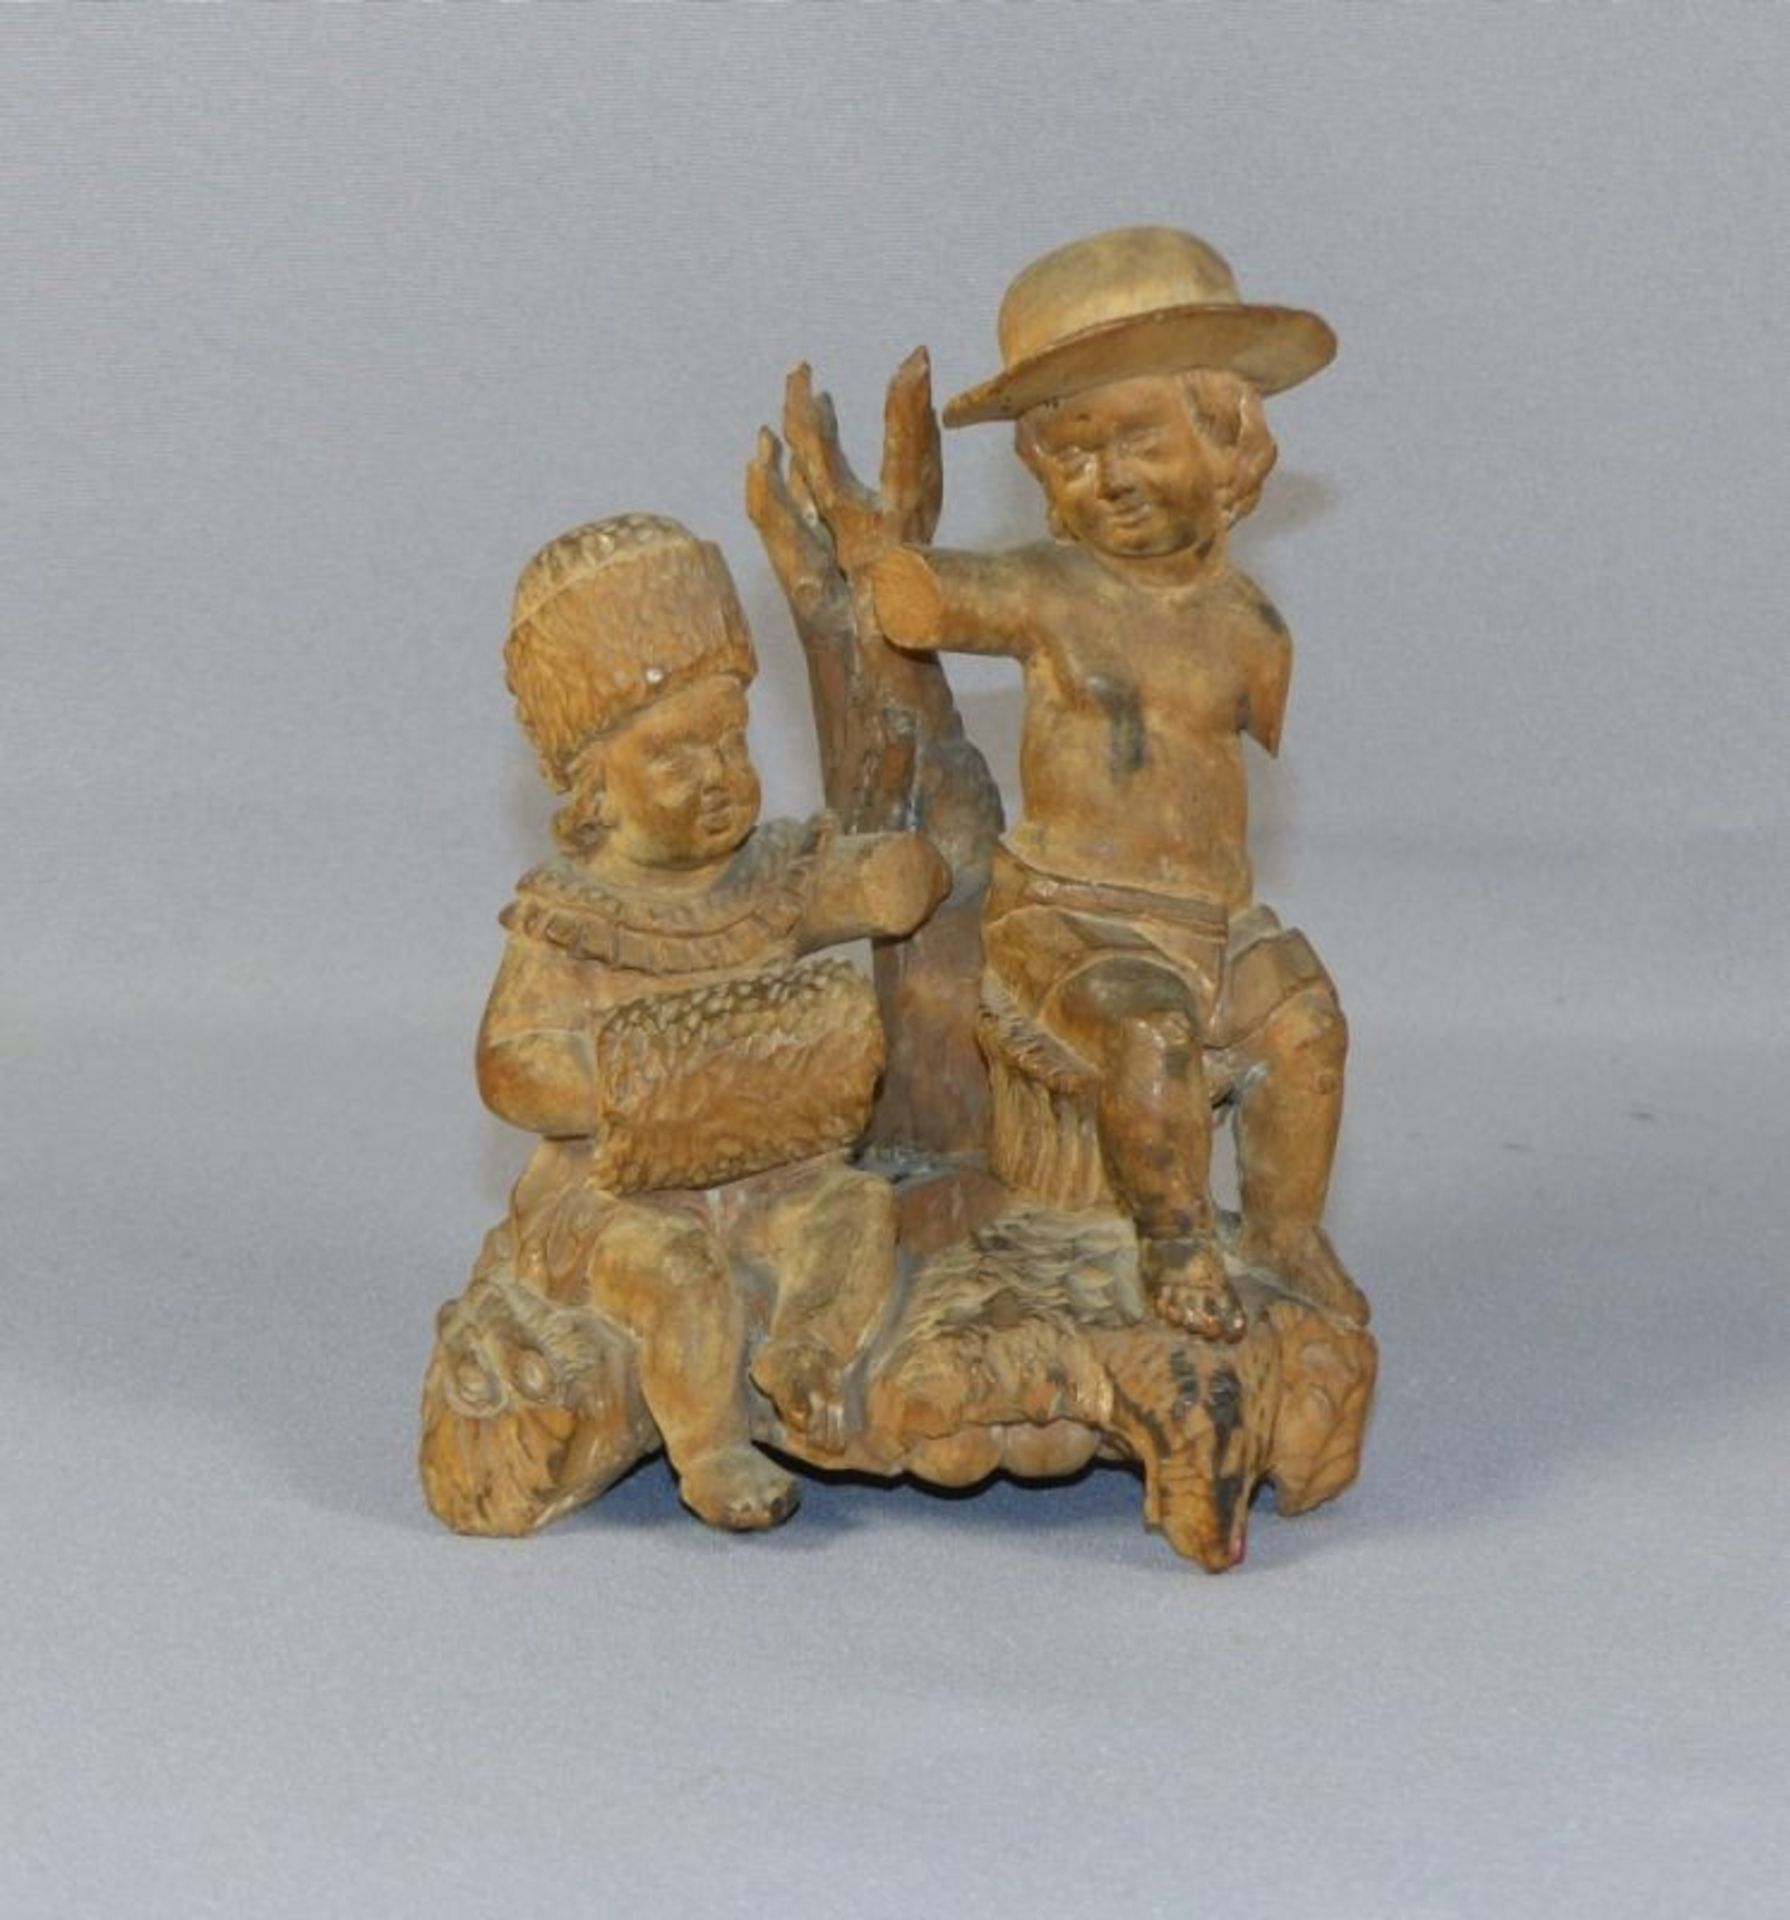 Bozzetto18. Jh.Zwei auf Natursockel an Baumstamm sitzende Kinder, das eine mit Pelz verbrämter Mütze